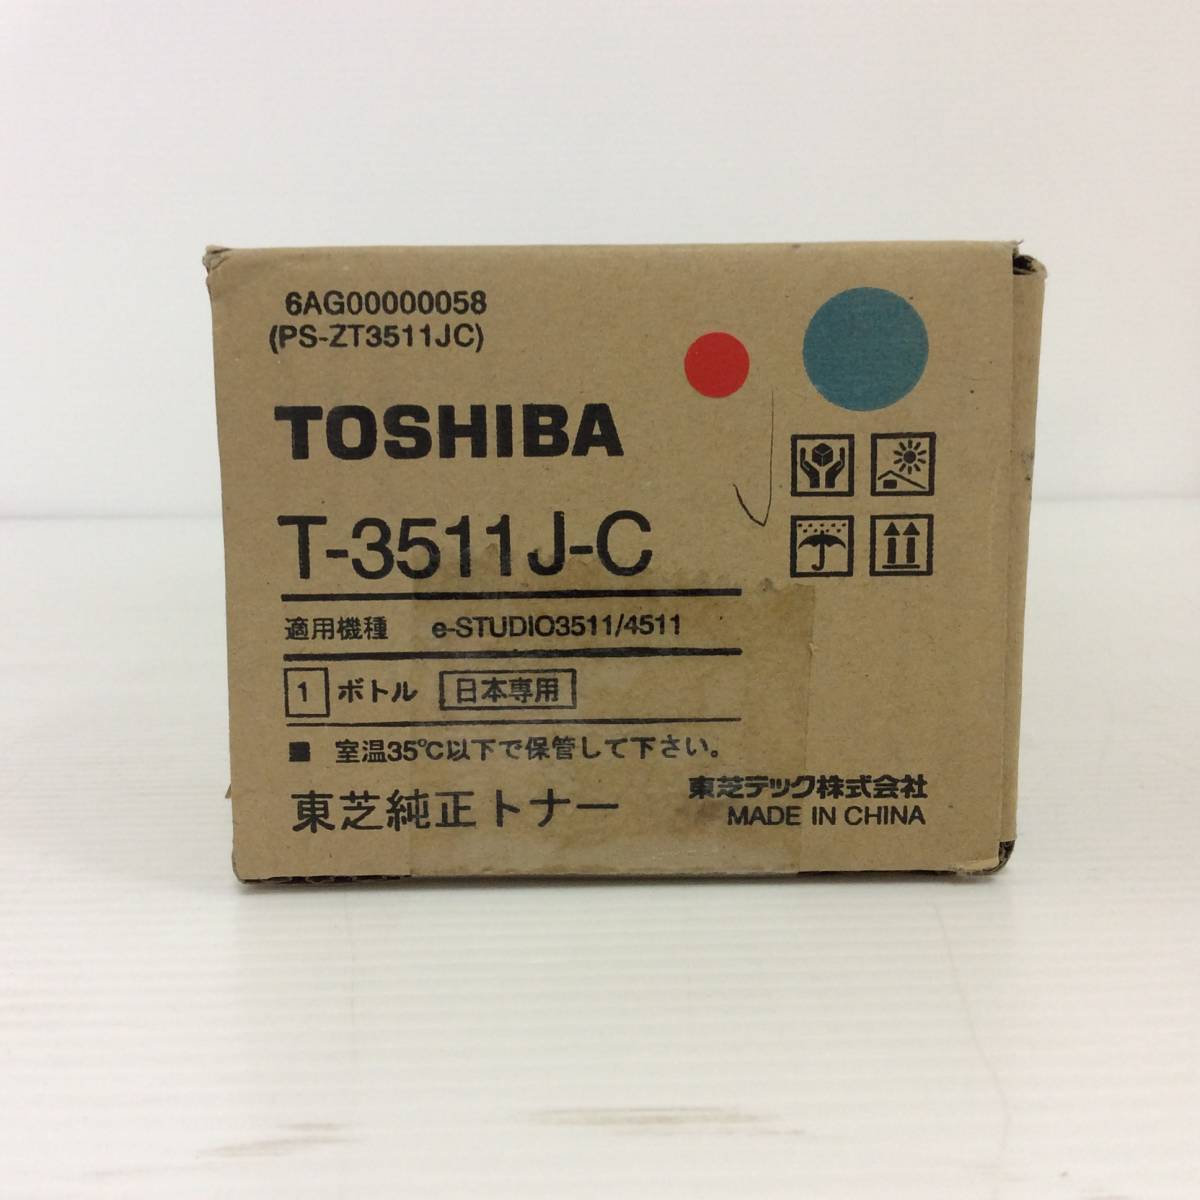 【 TOSHIBA 】トナーカートリッジ T-3511J-C Cyan B154_画像2